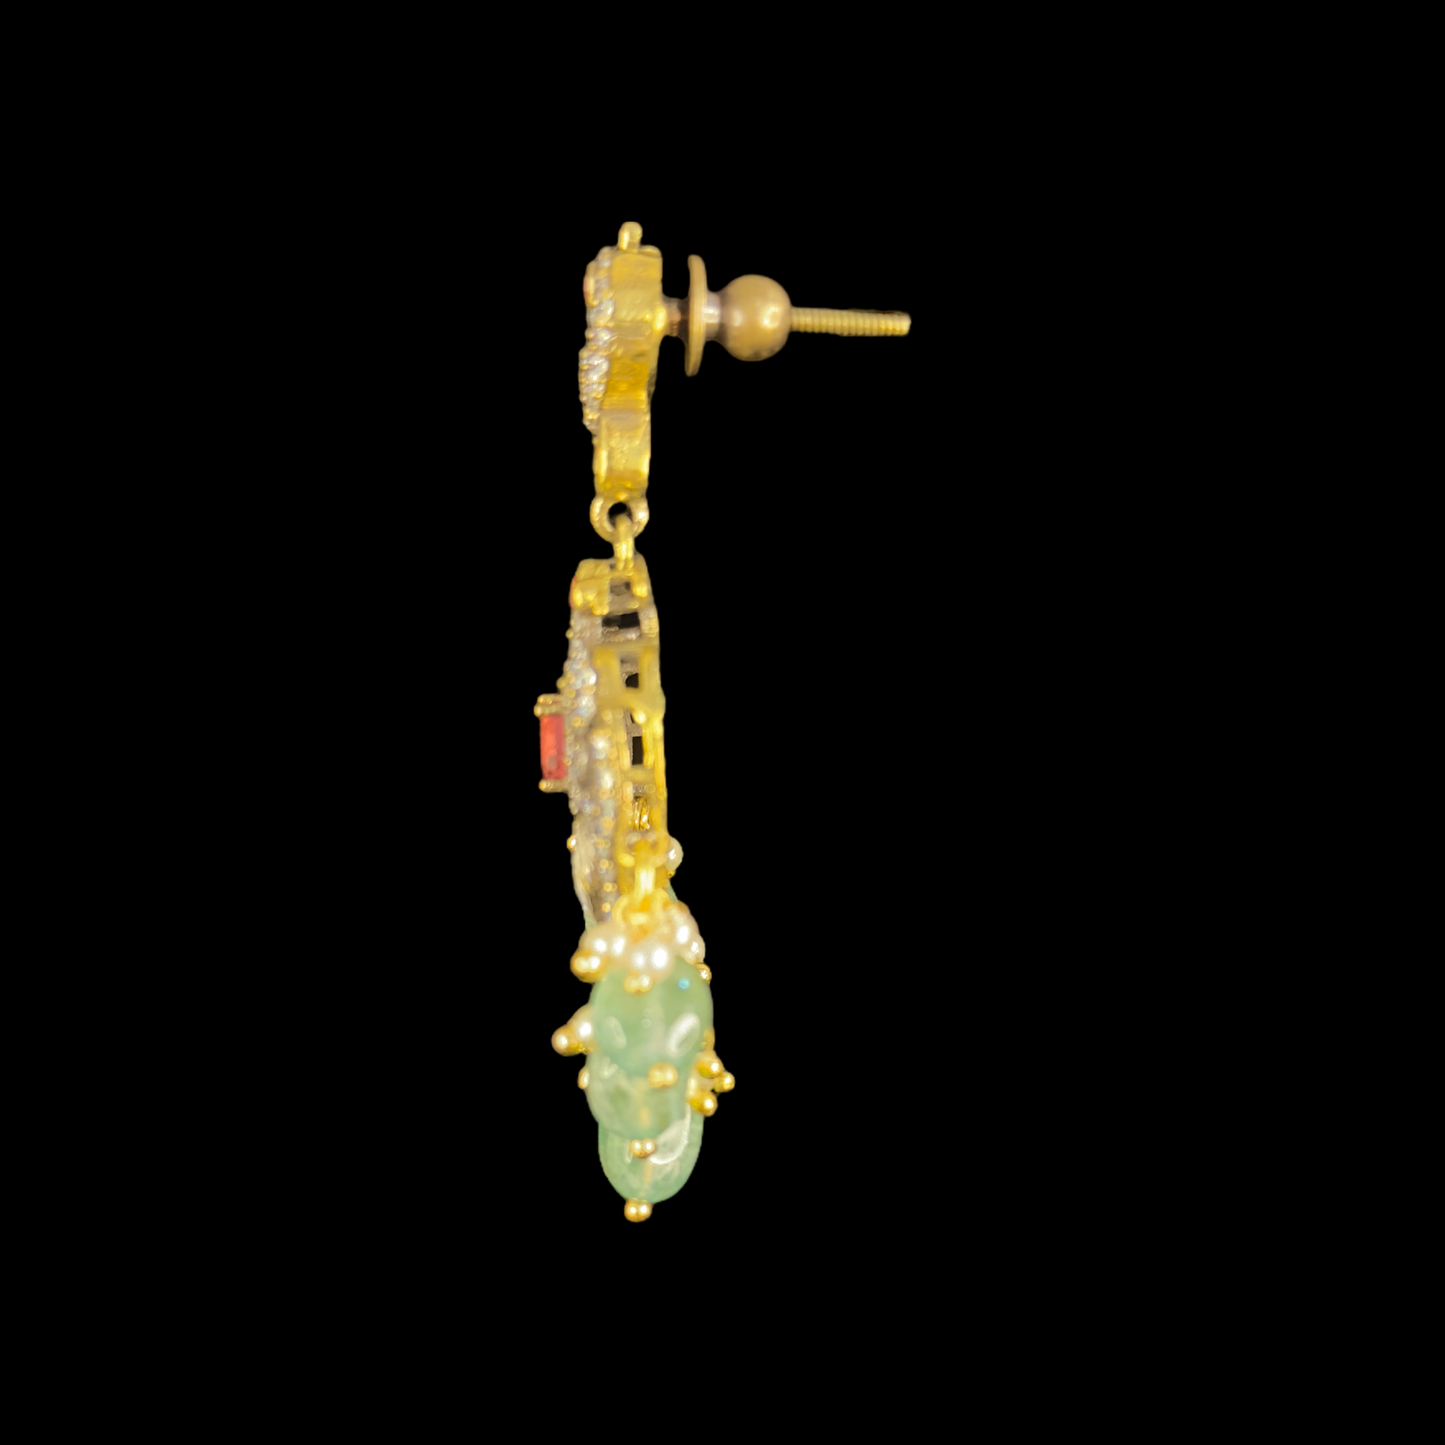 “Array of Peacocks” Victorian Zircon Necklace Set